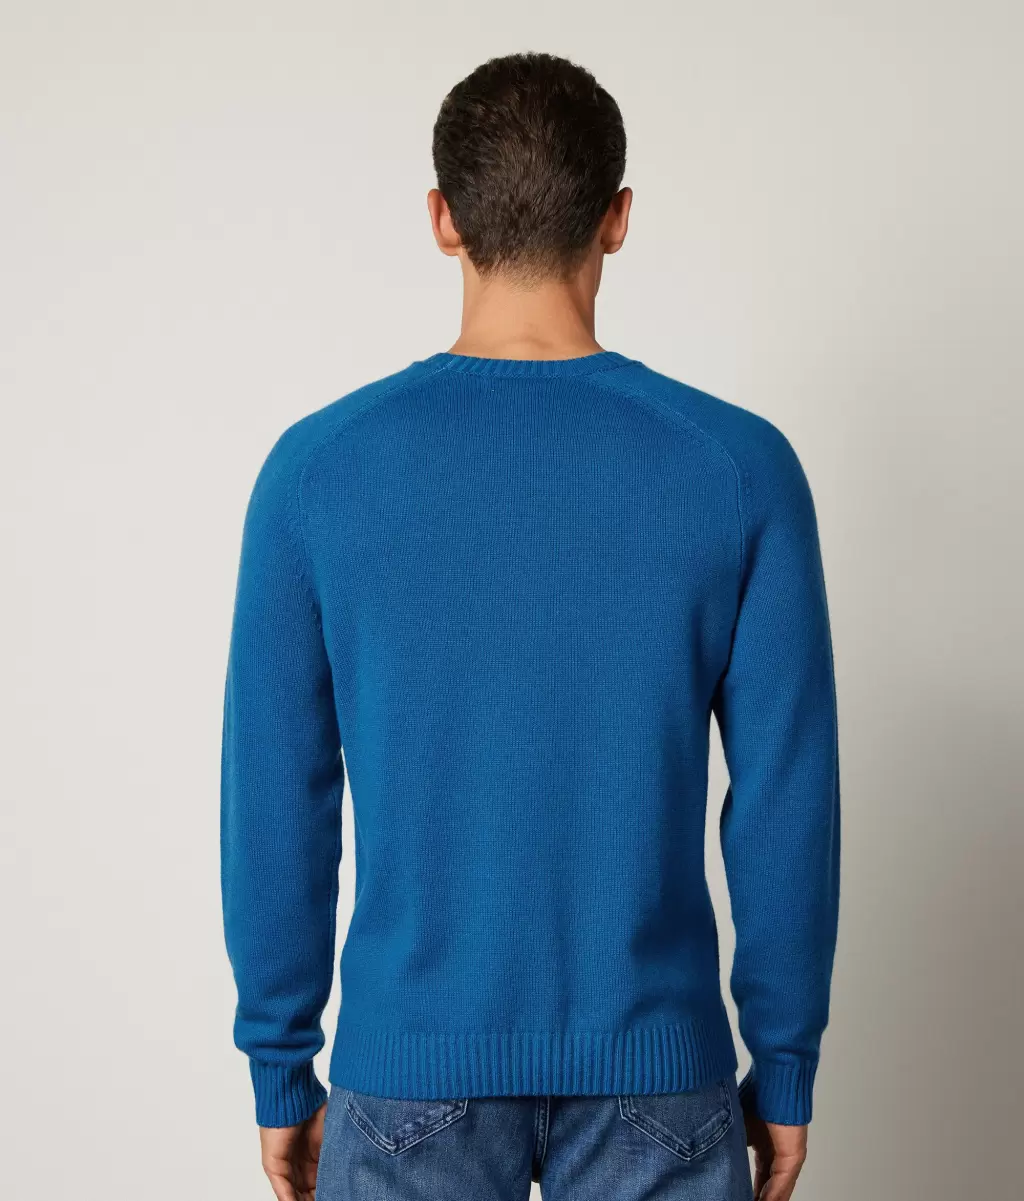 Swetry Z Okrągłym Dekoltem Pulower Z Kaszmiru Ultrasoft Mężczyzna Falconeri Blue - 2